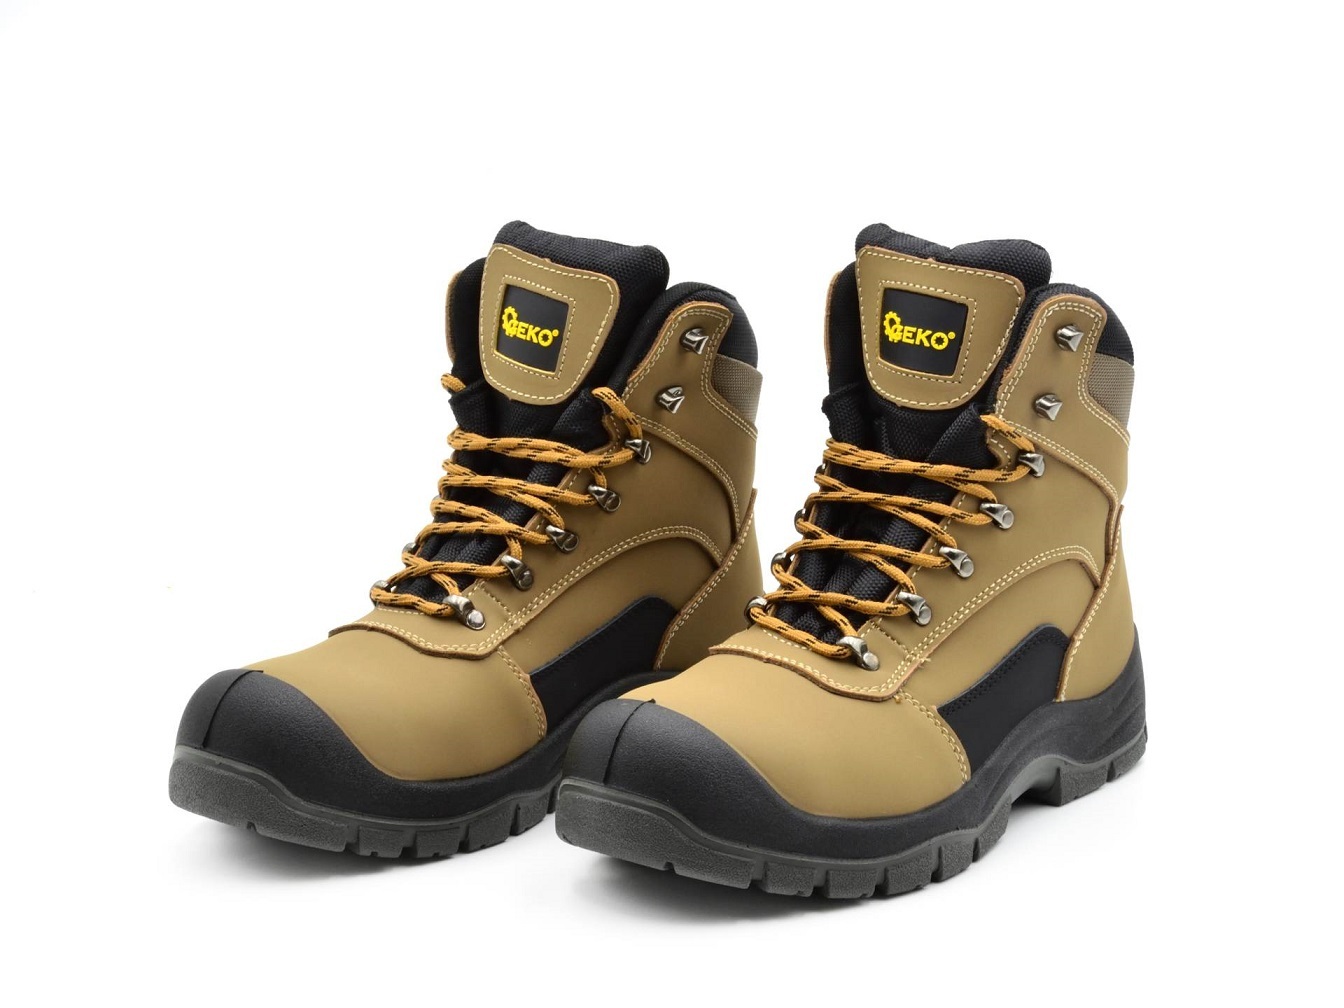 Ochranné pracovní boty velikost 43 GEKO nářadí G90541-43 + Dárek, servis bez starostí v hodnotě 300Kč